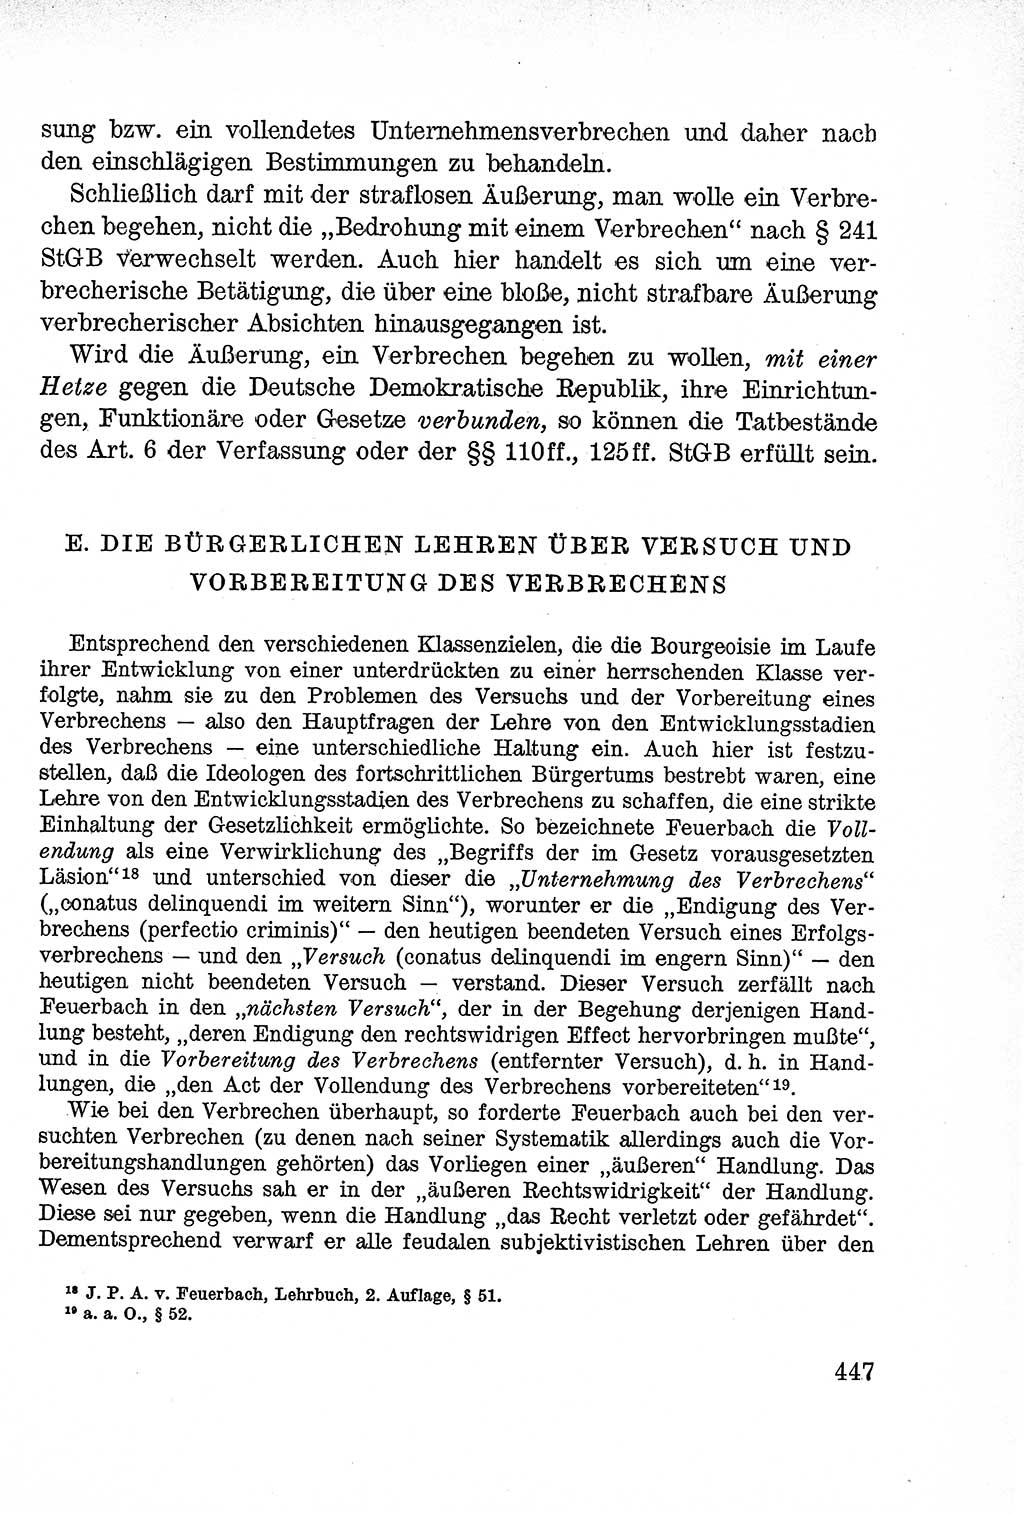 Lehrbuch des Strafrechts der Deutschen Demokratischen Republik (DDR), Allgemeiner Teil 1957, Seite 447 (Lb. Strafr. DDR AT 1957, S. 447)